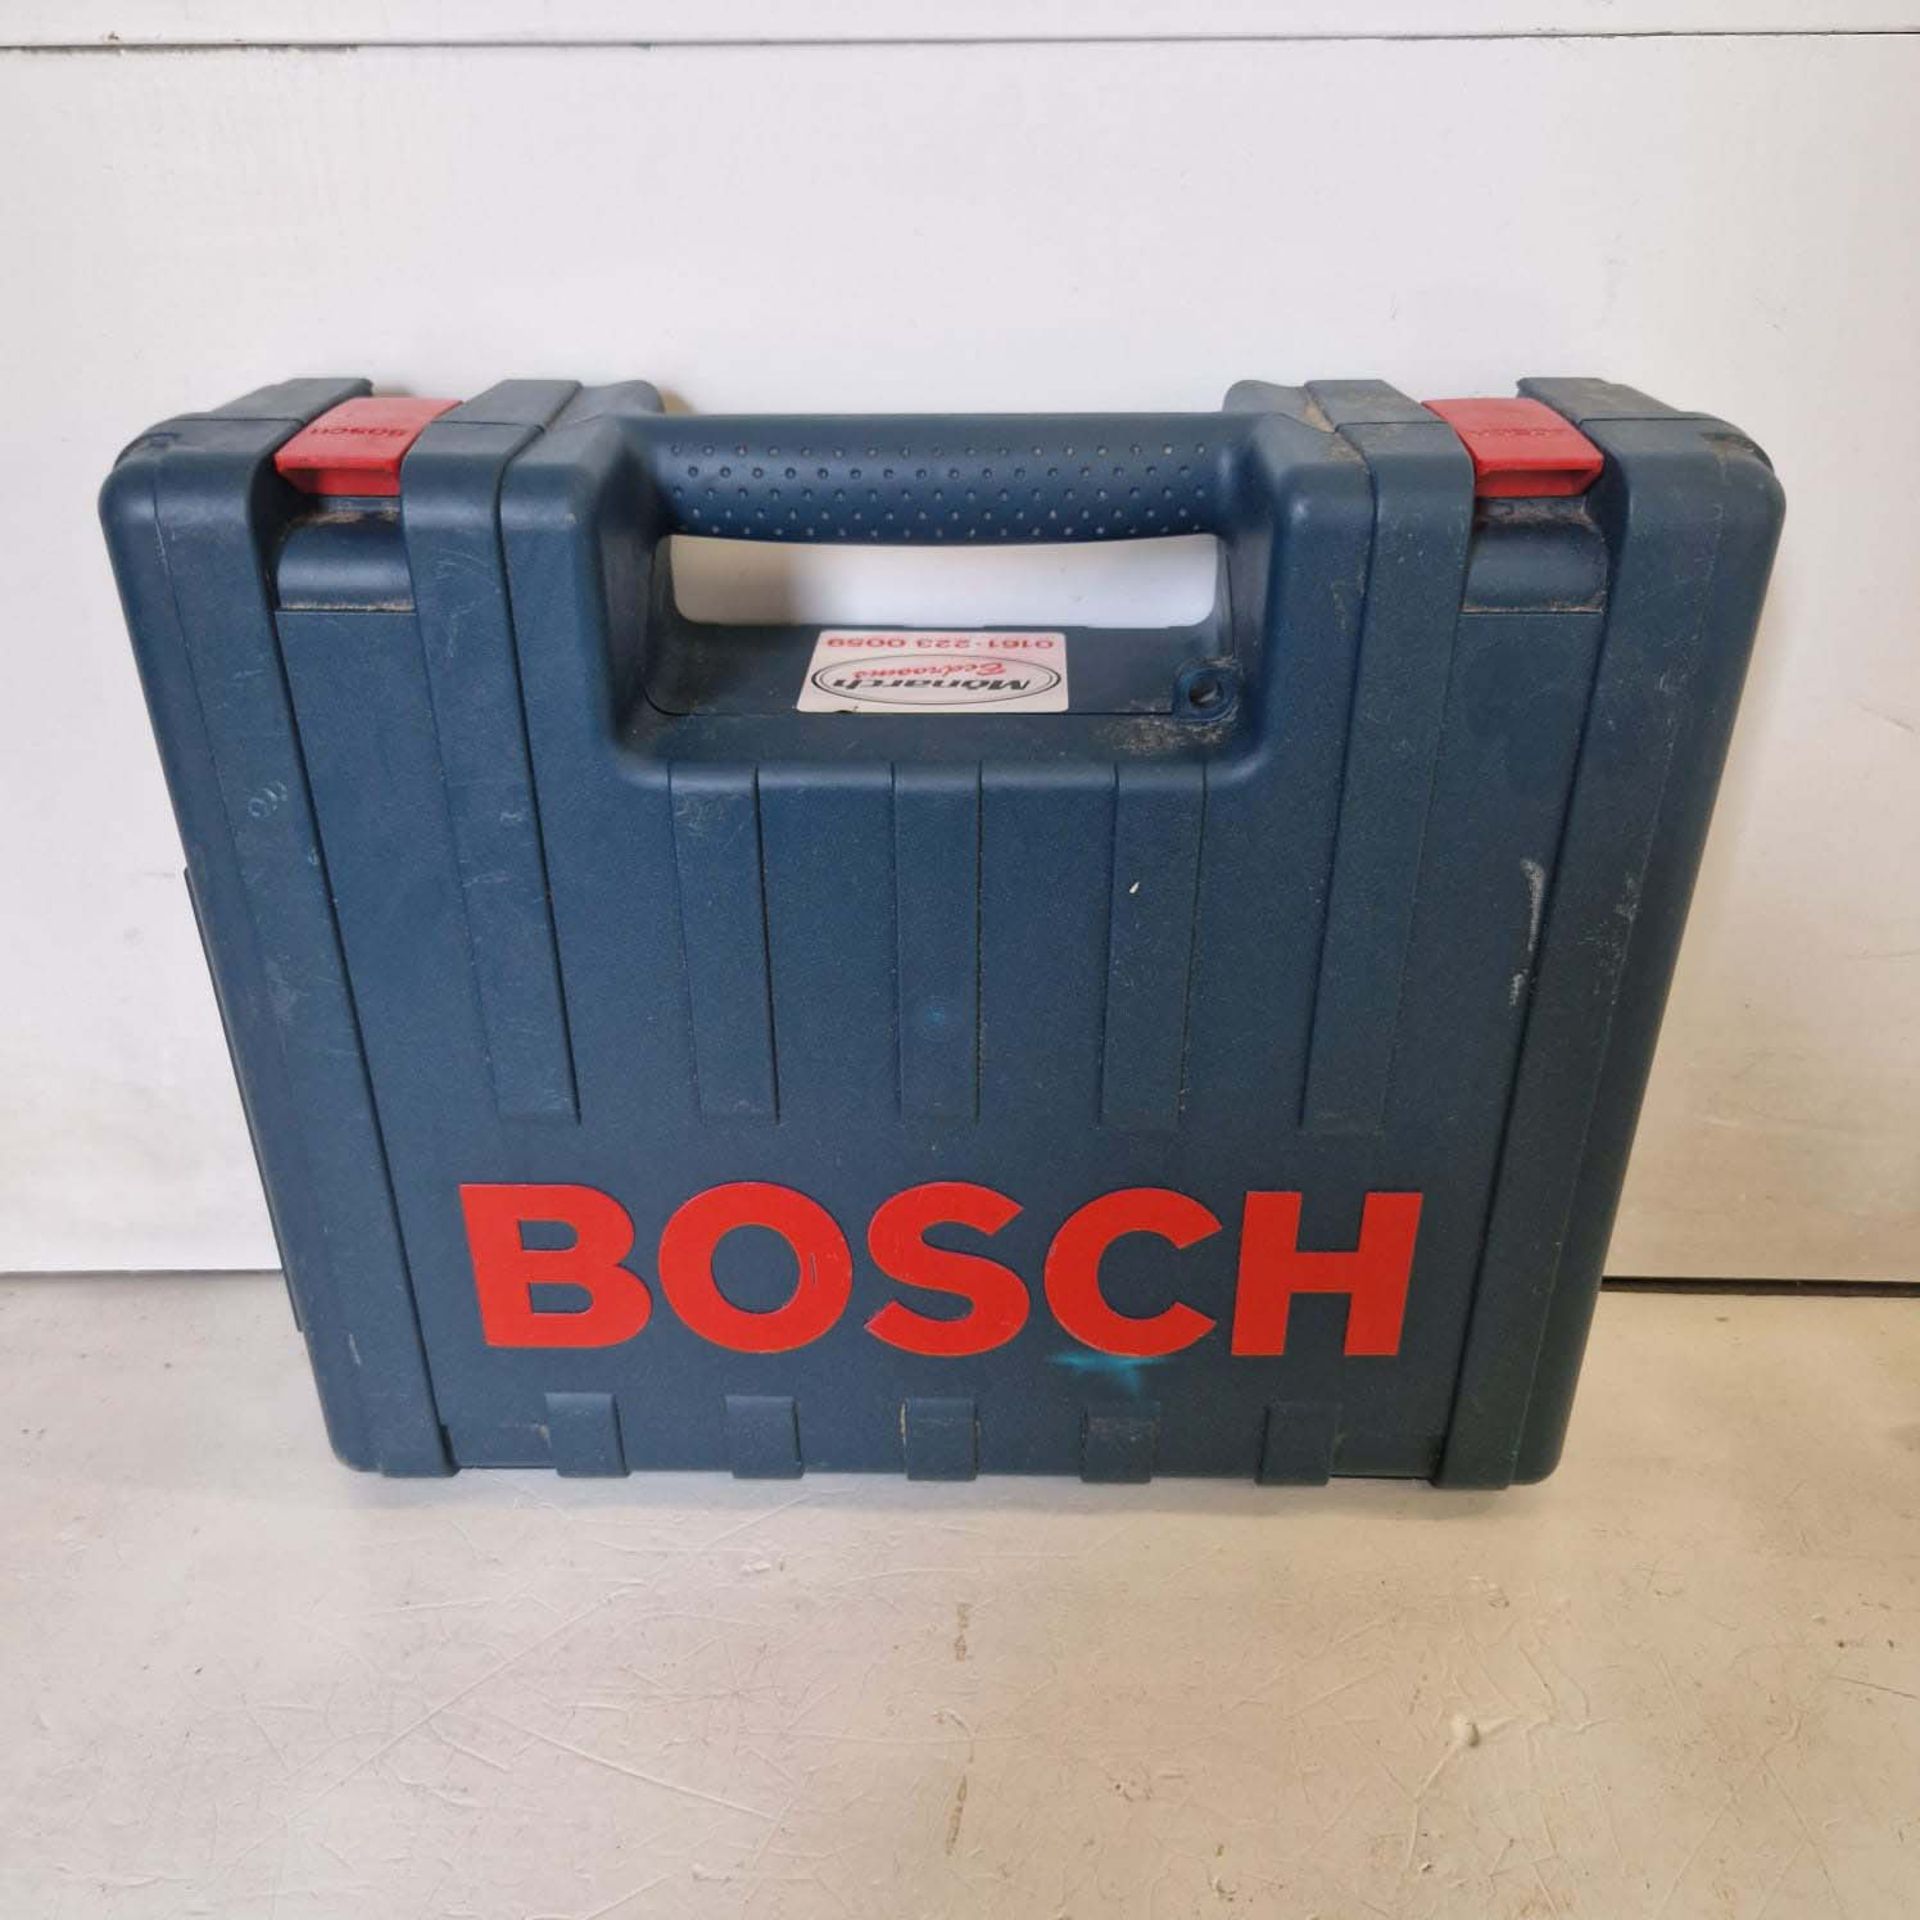 Bosch Professional Hammer Drill 110V Model 6SB 18-2RE. - Image 9 of 9